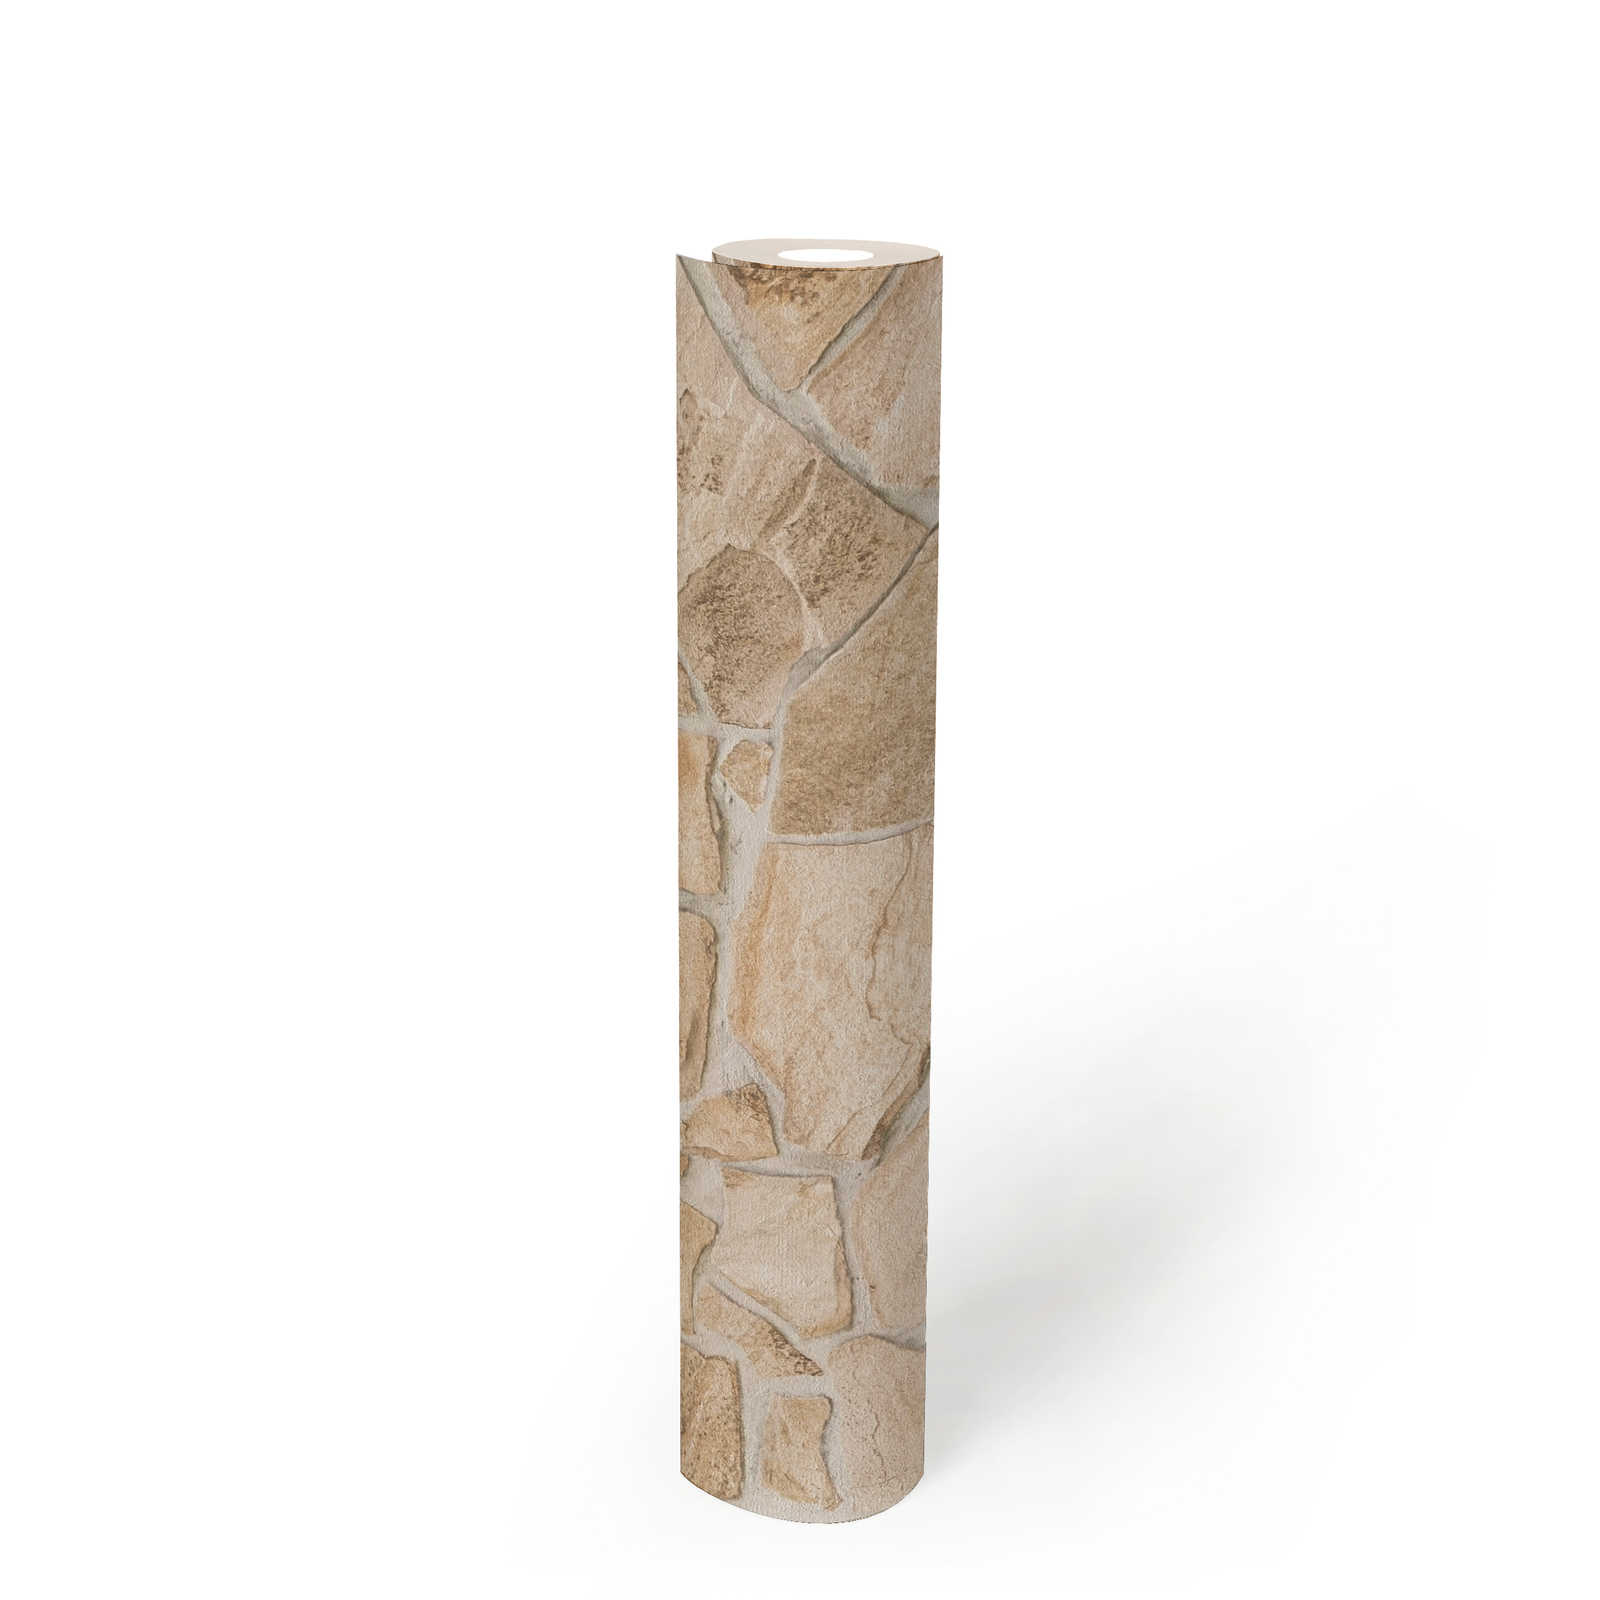             Papel pintado de piedra con óptica 3D - Beige, Marrón
        